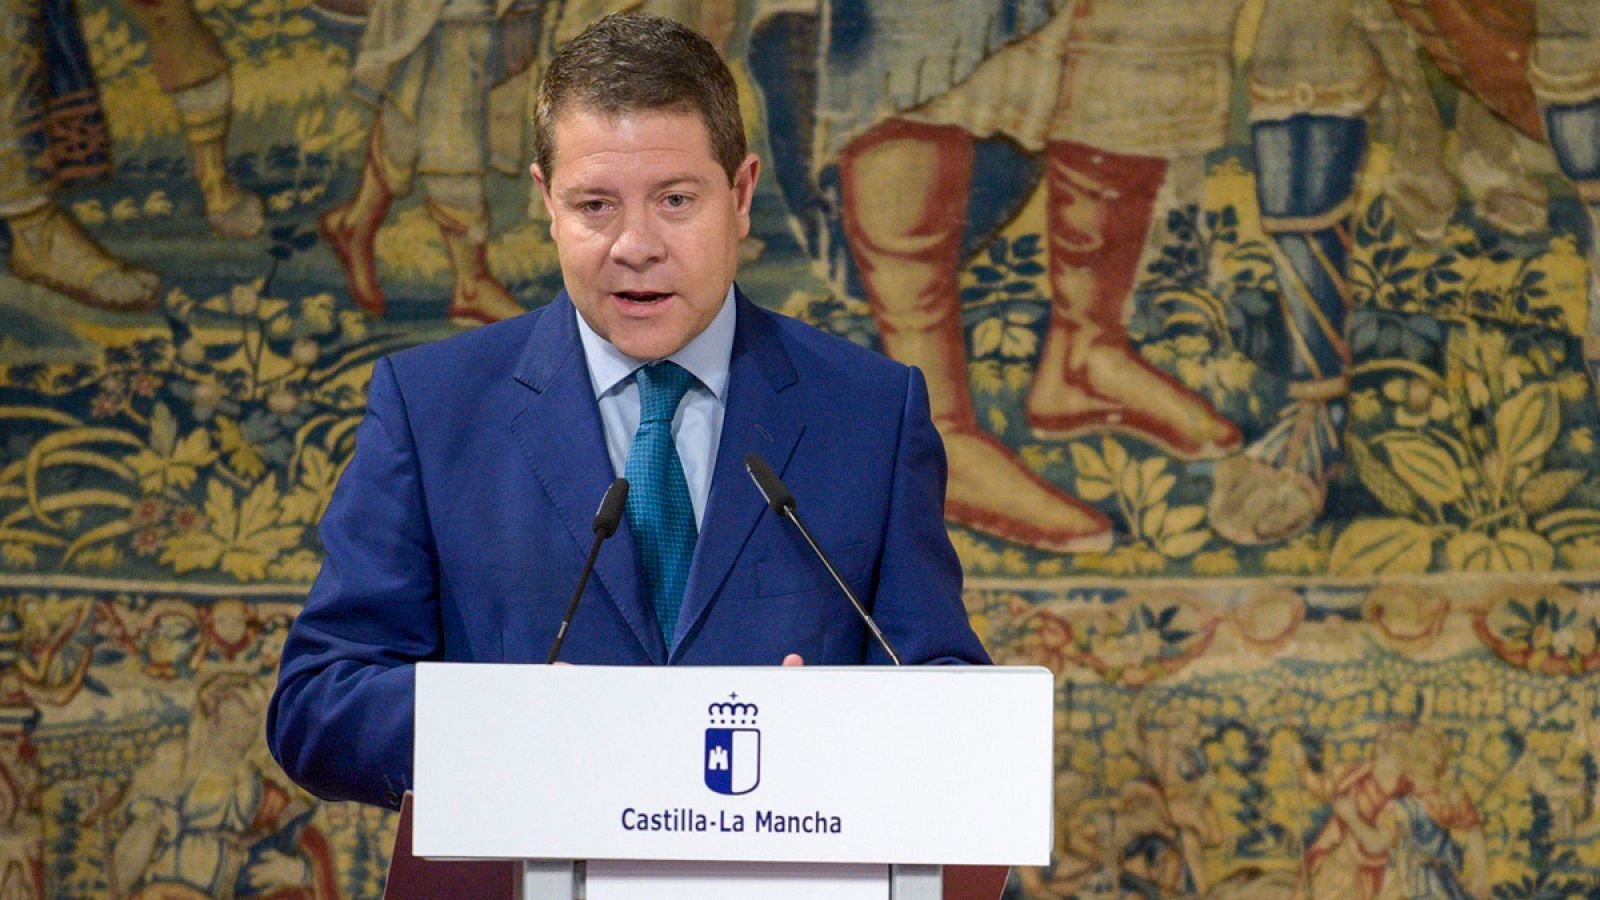 El presidente de la Junta de Comunidades de Castilla-La Mancha Emiliano Gargía-Page comparece ante los medios de comunicación,